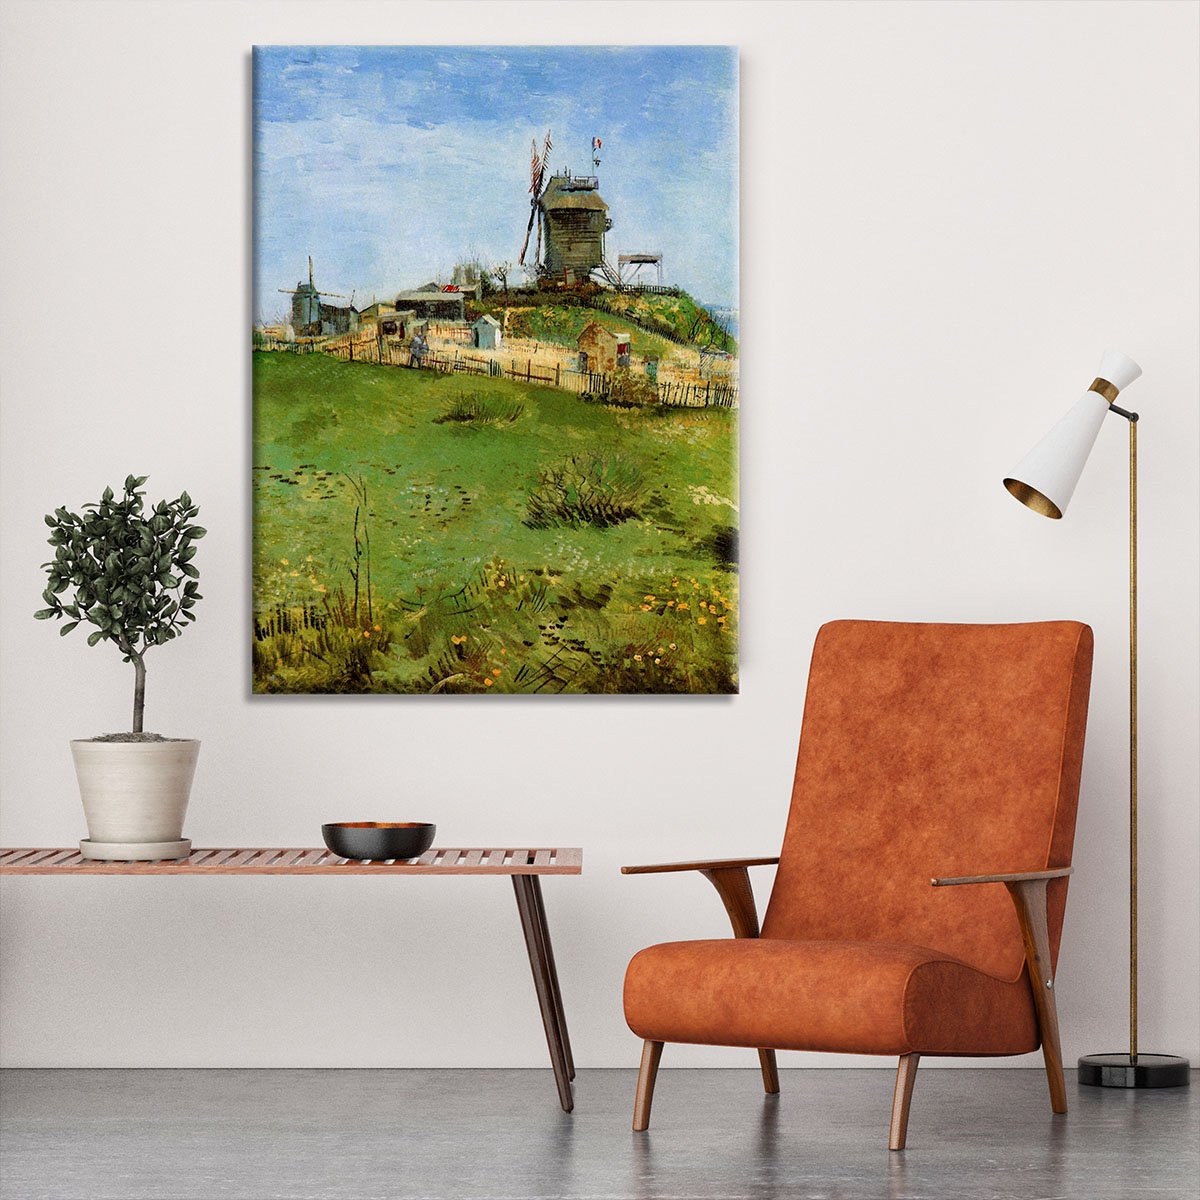 Le Moulin de la Galette 4 by Van Gogh Canvas Print or Poster